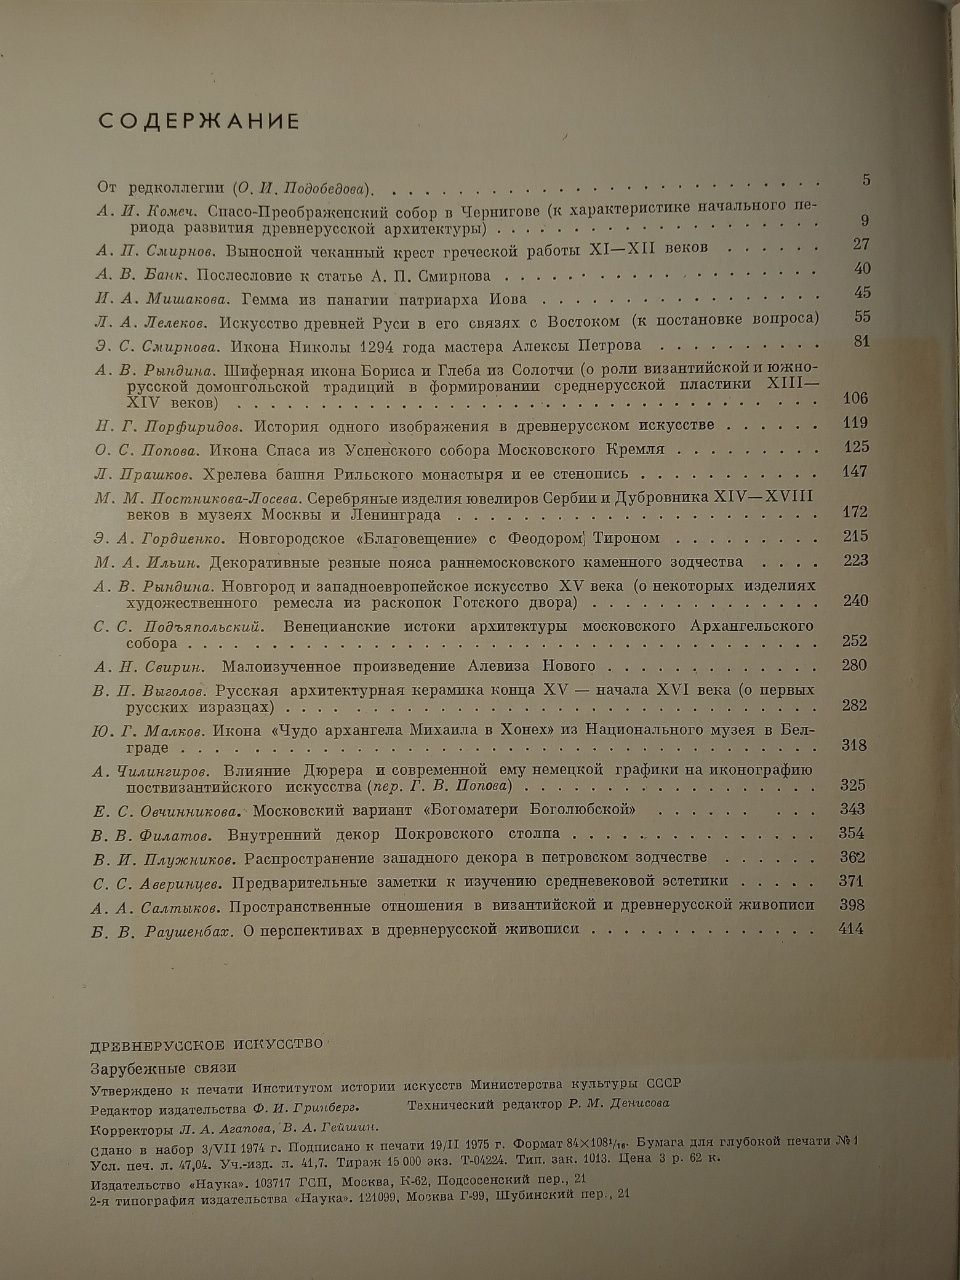 Древне-русское искусство. Зарубежные связи. 1975 год издания.